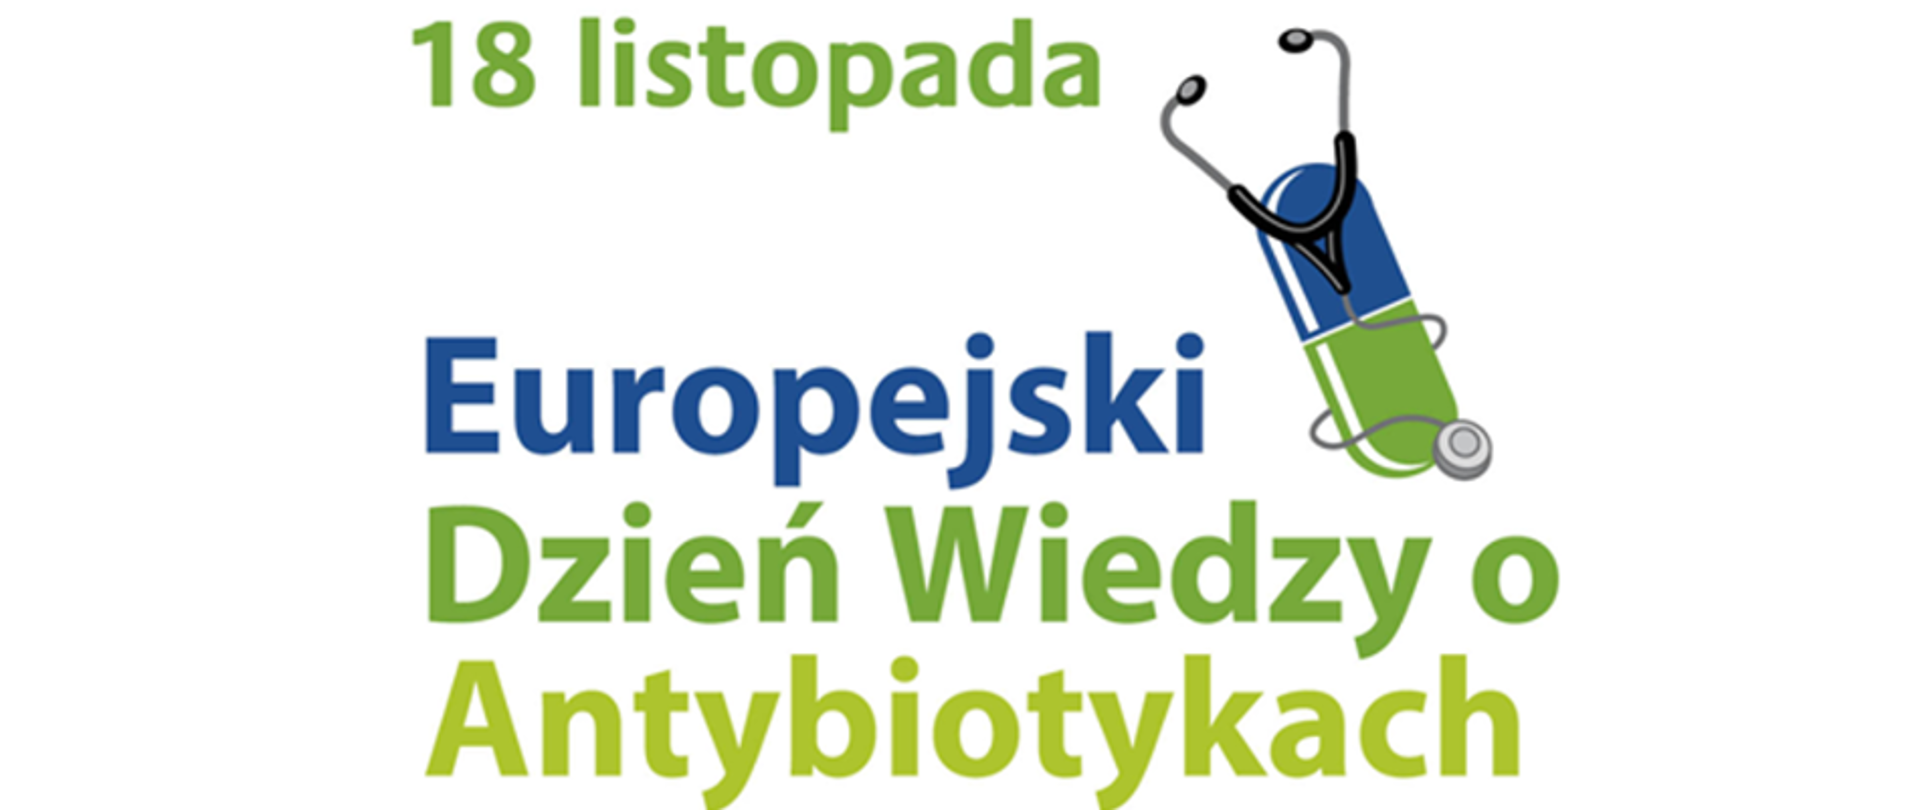 Baner z napisem: "18 listopada Europejski Dzień Wiedzy o Antybiotykach". Słowo "Europejski" jest w kolorze ciemnoniebieskim, pozostały tekst w dwóch odcieniach zielonego. Z prawej, górnej strony napisu widać pastylkę leku w kolorze niebisko - zielonym, a wokół niej owinięty stetoskop.